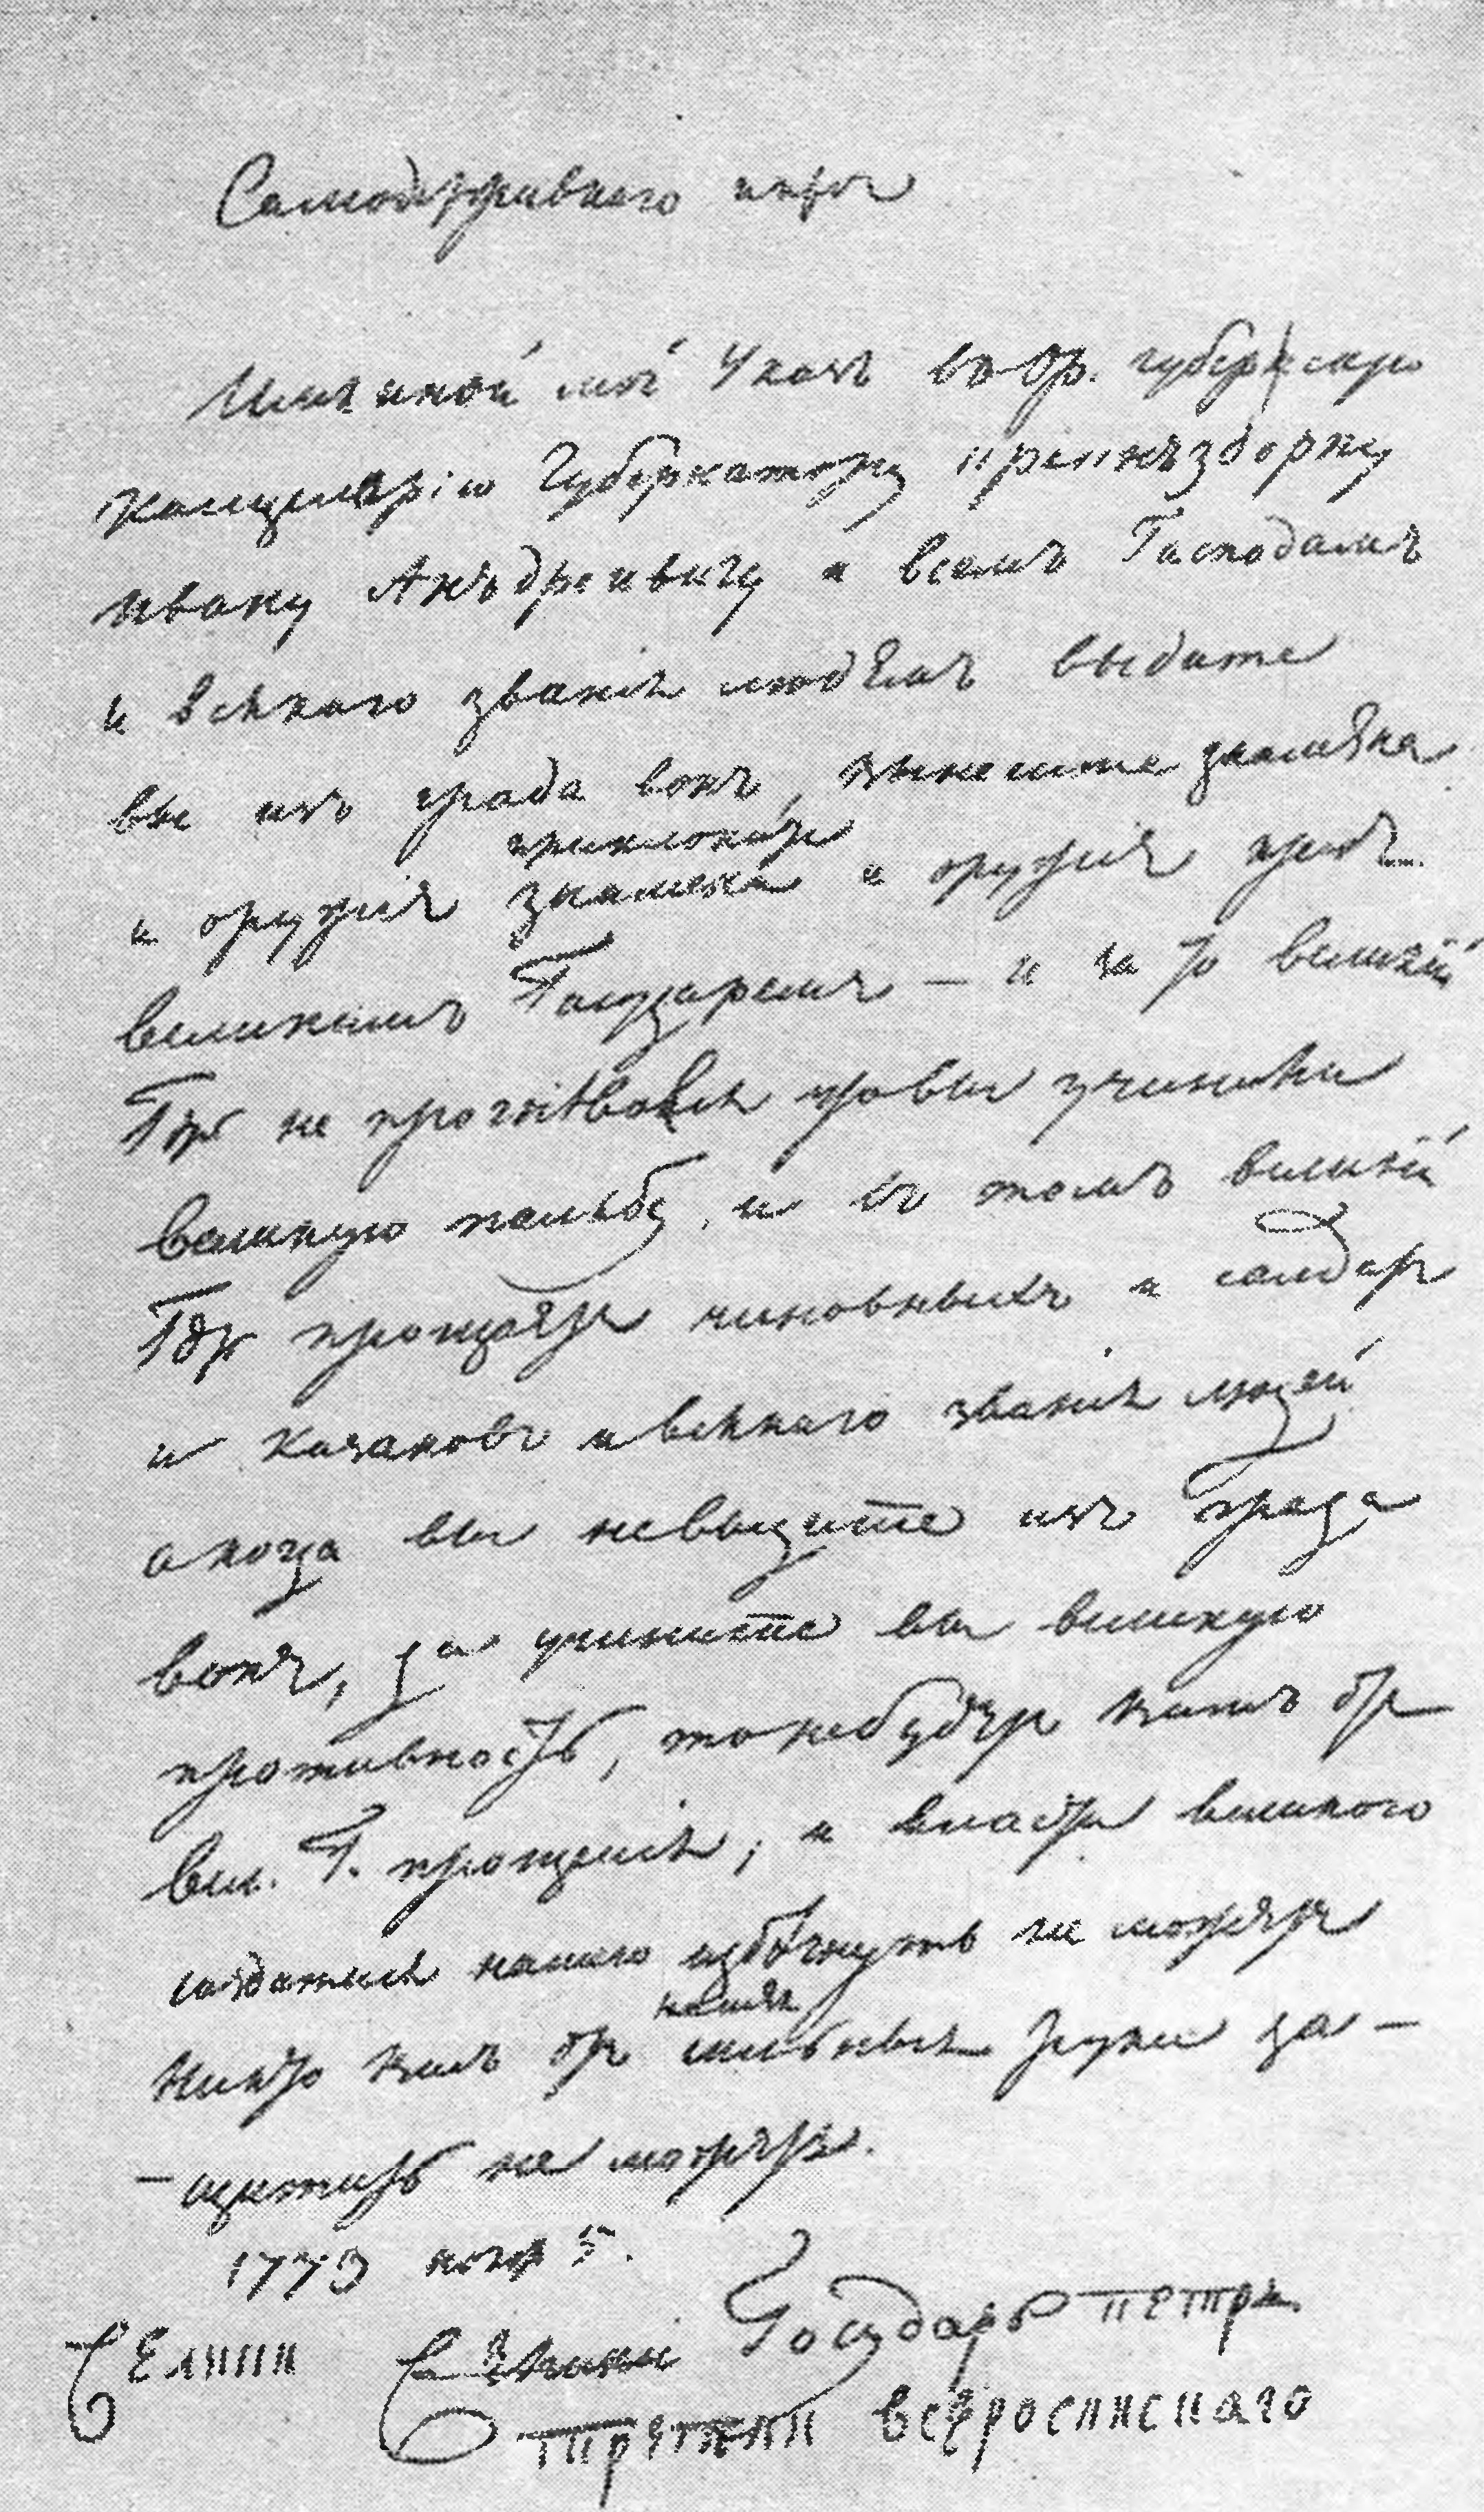 Именной указ Пугачева от 5 ноября 1773 г. Копия Пушкина. ПД, № 385, л. 1